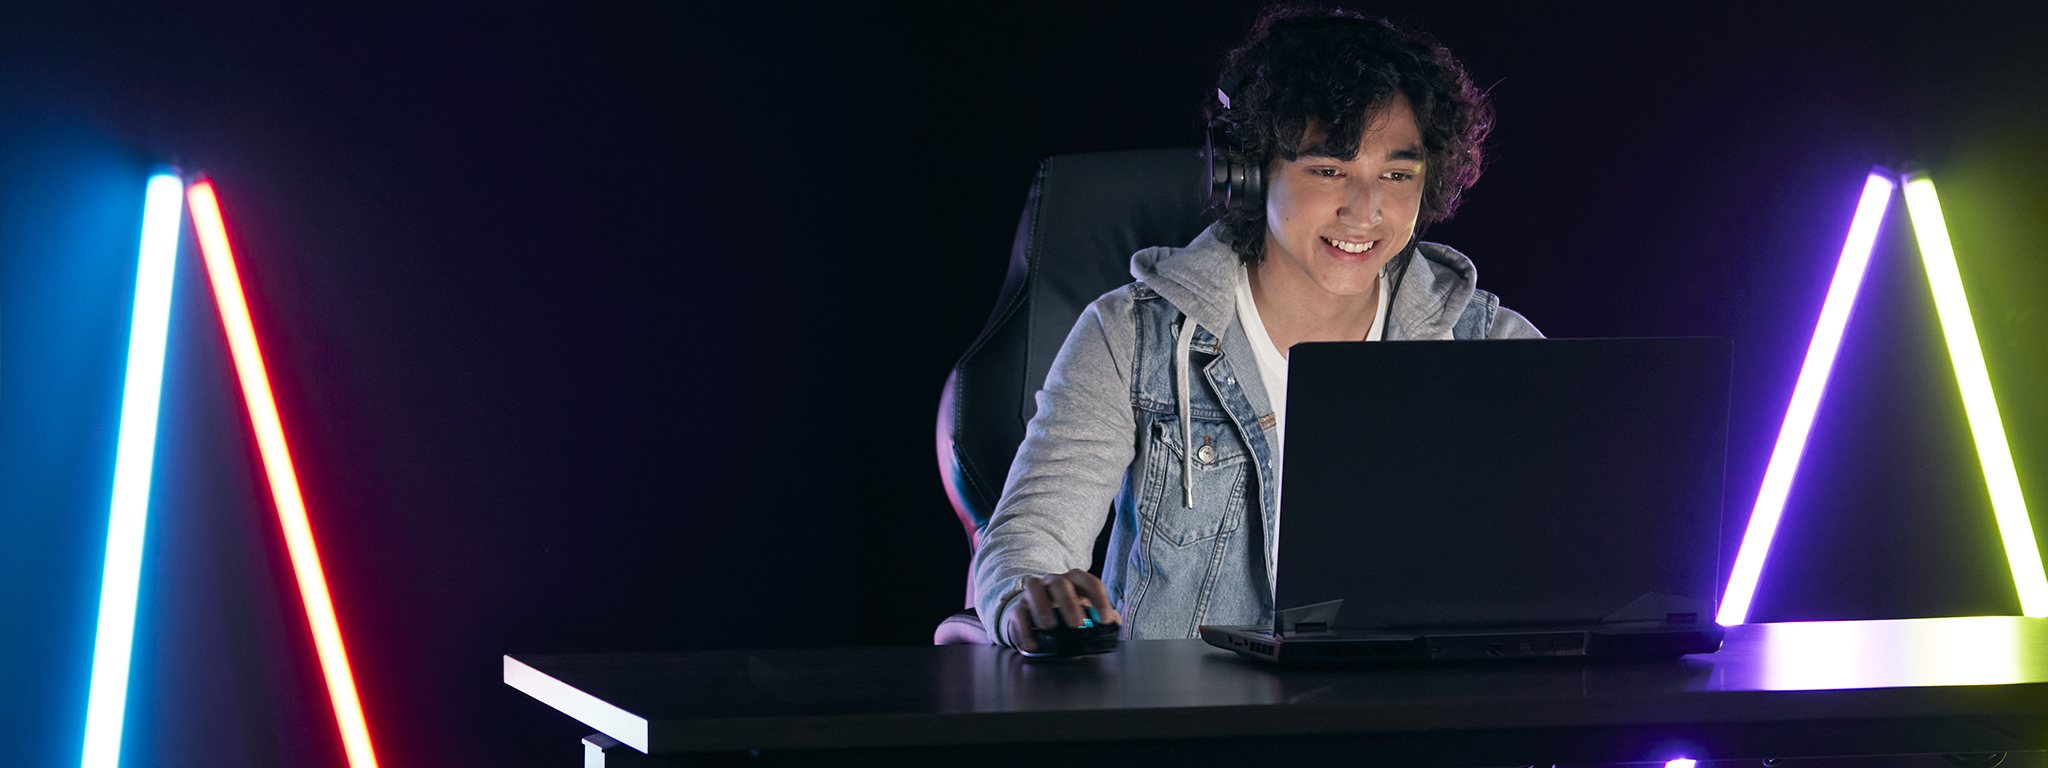 Ein junger Gamer, der in einem dunklen Raum an seinem Laptop spielt